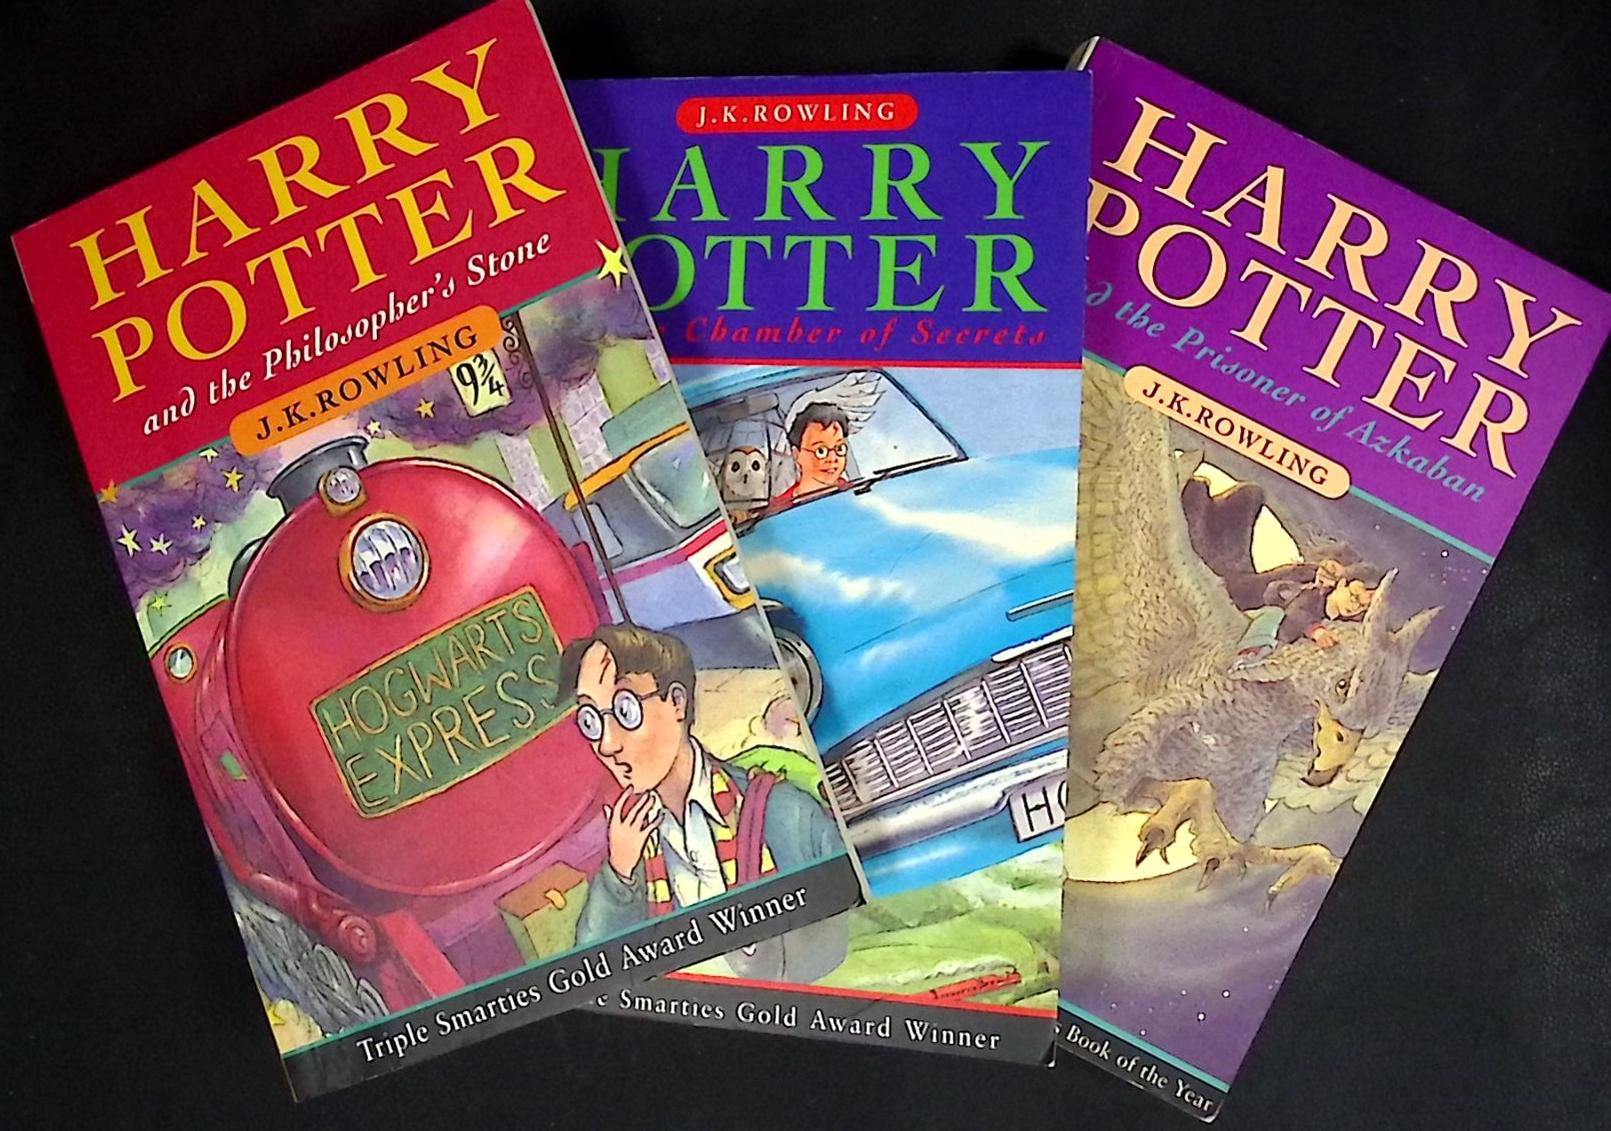 The Harry Potter Set: Philosopher's Stone; Chamber of Secrets; Prisoner of Azkaban. 3 volume set.